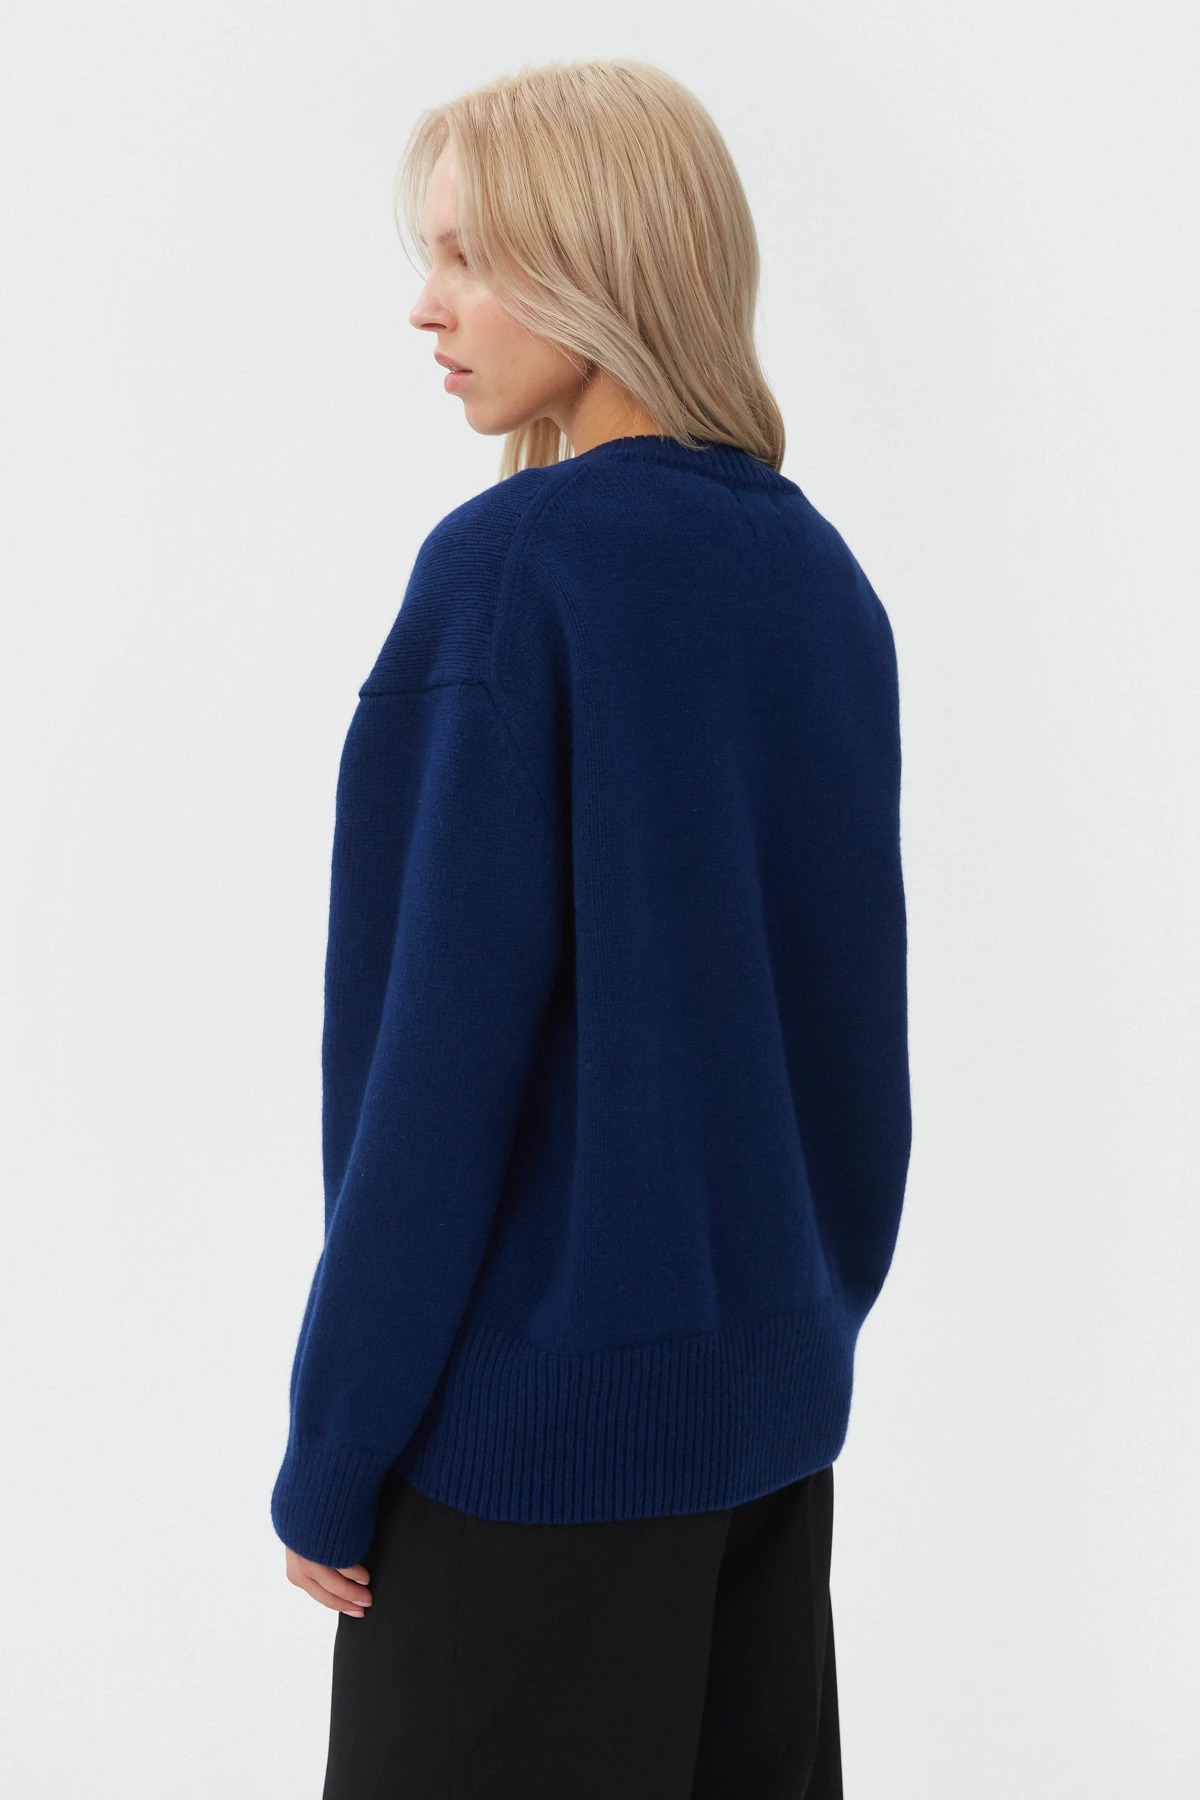 Cashmere dark blue sweater, photo 4